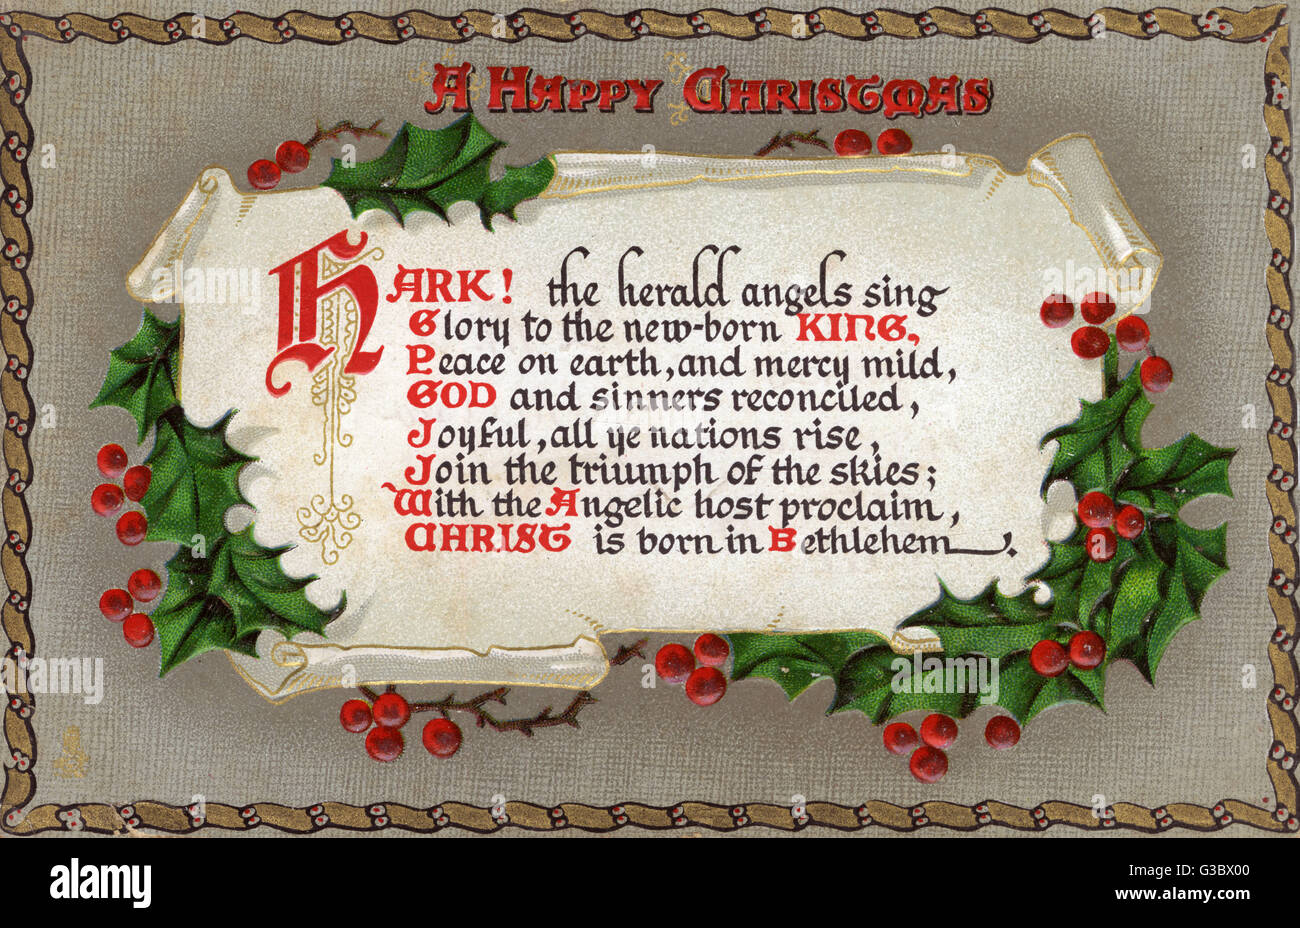 Horch! The Herald Angels Sing - Weihnachtslied. Das Lied erschien zuerst in 1739 in der Auflistung Hymnen und Heilige Gedichte von Charles Wesley geschrieben worden.     Datum: um 1910 Stockfoto